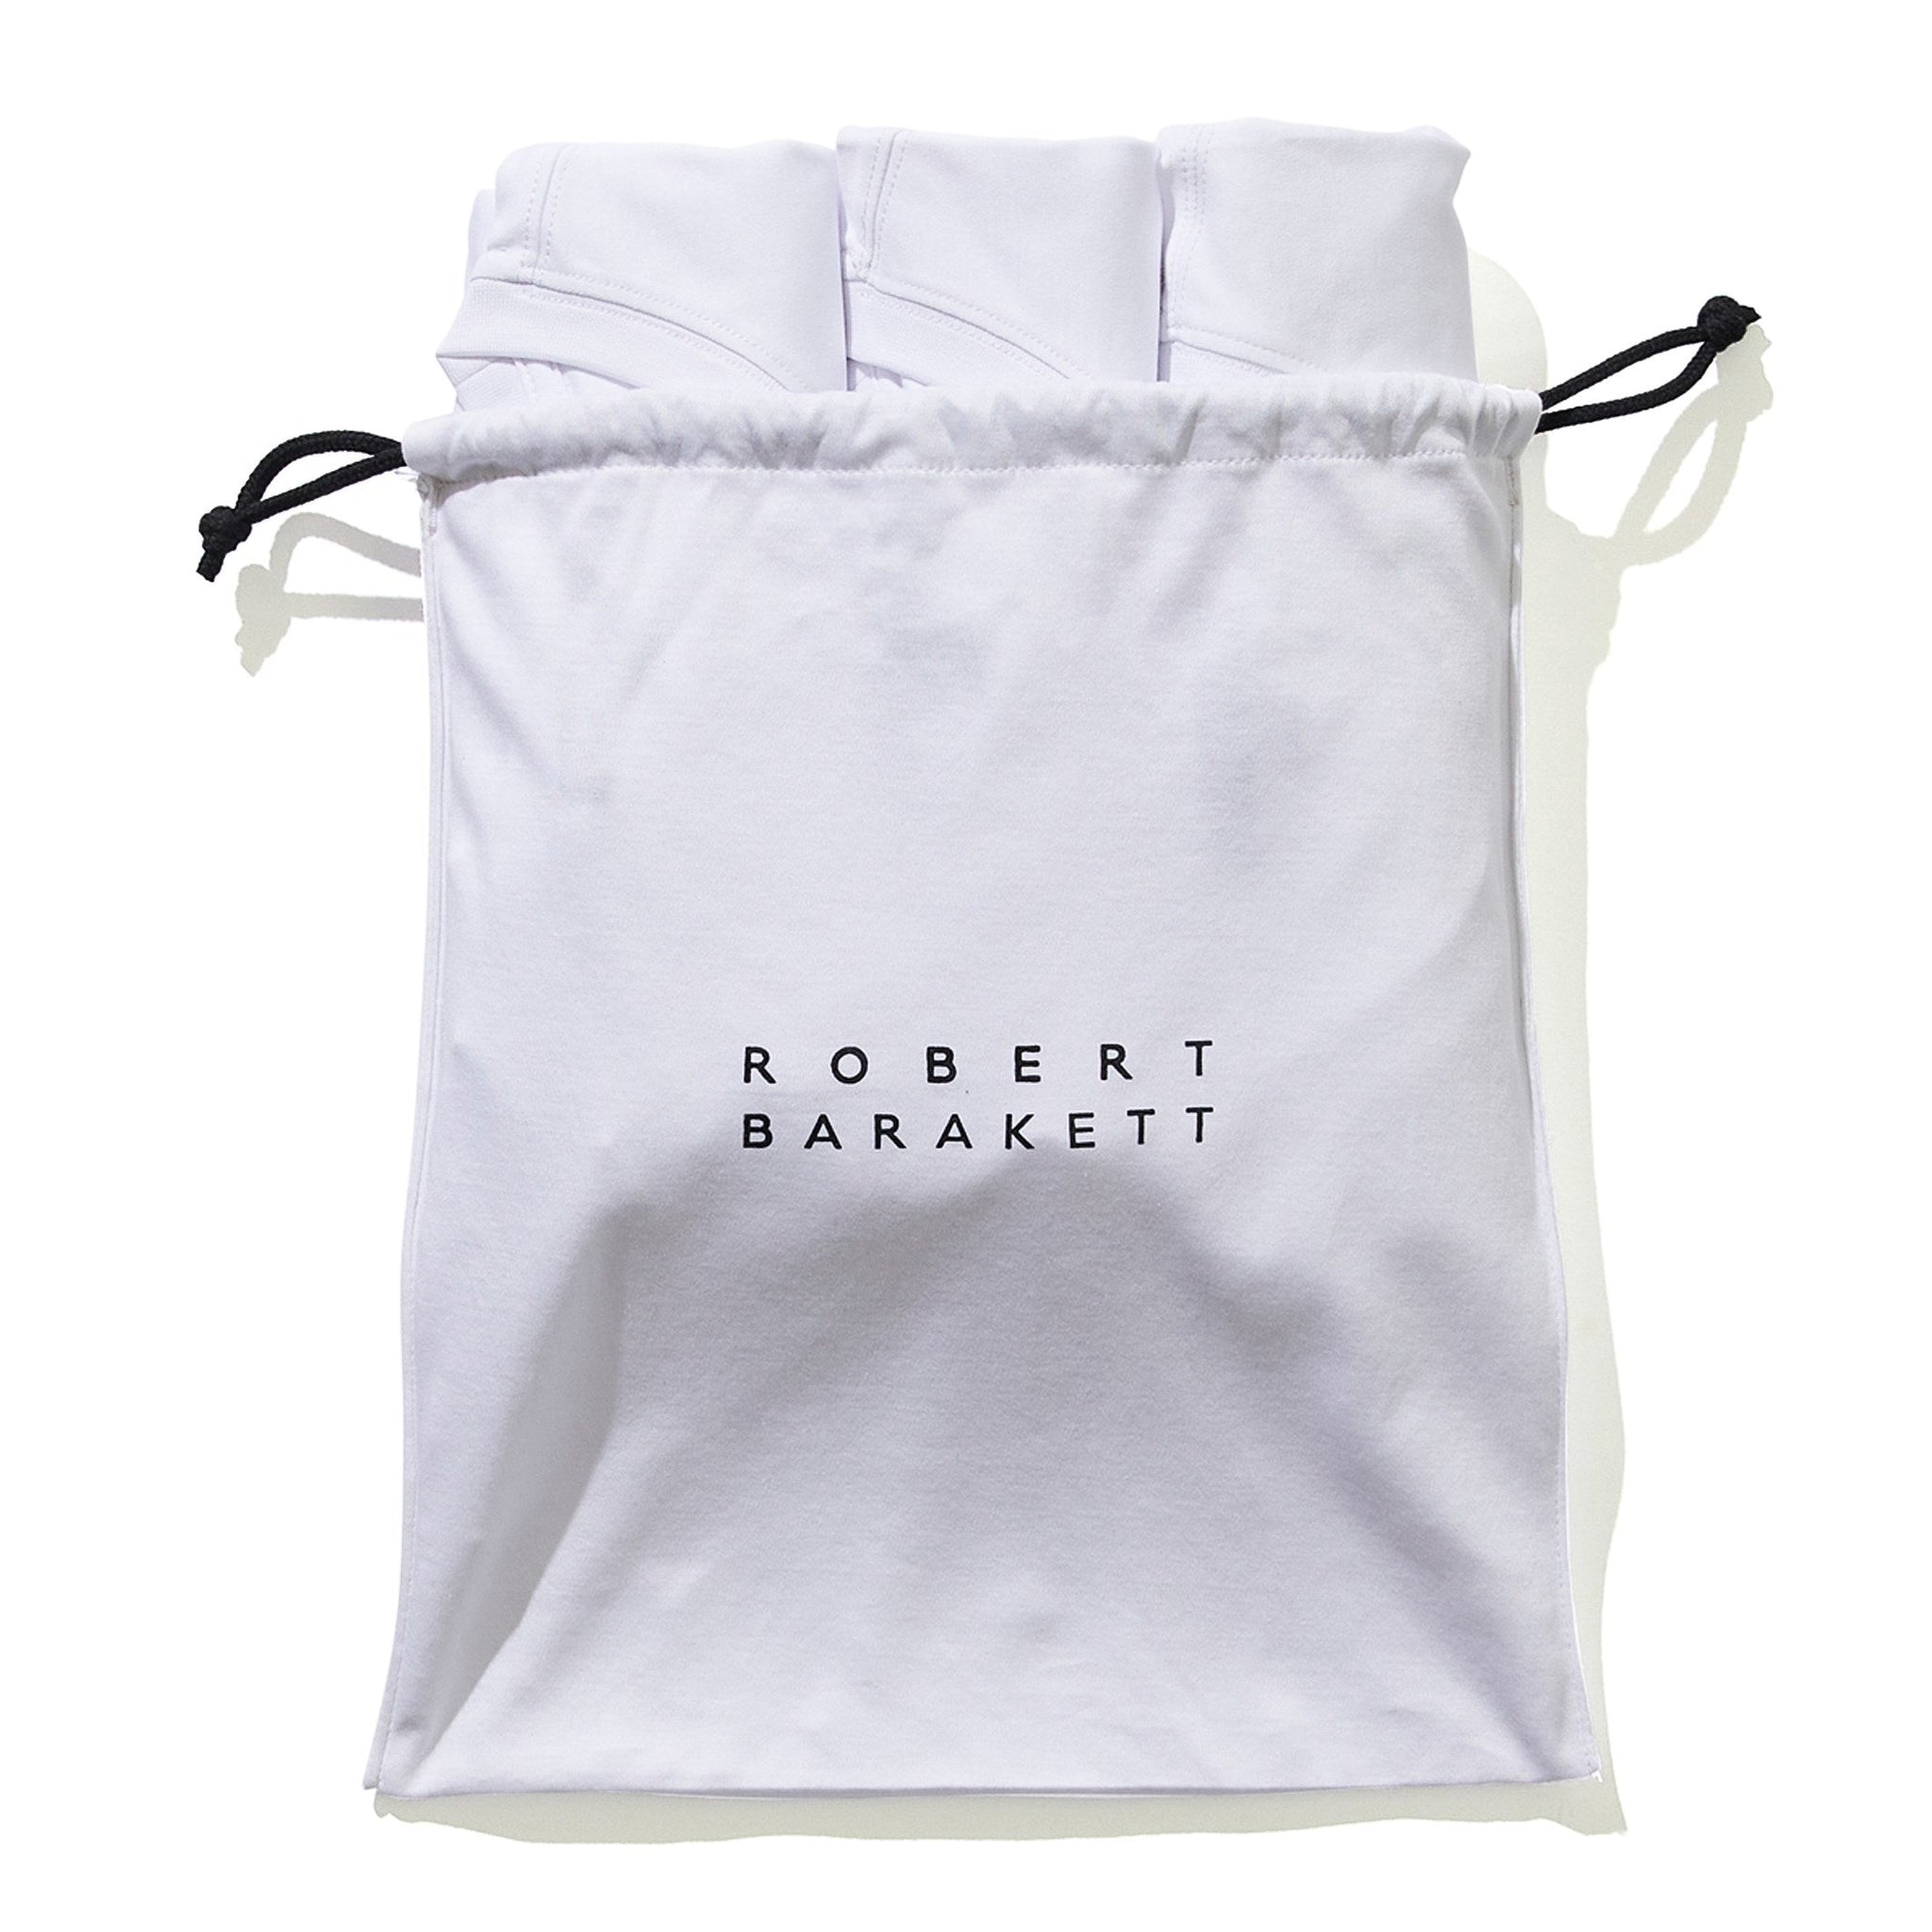 Robert Barakett The Barakett Tee 3 Pack In White